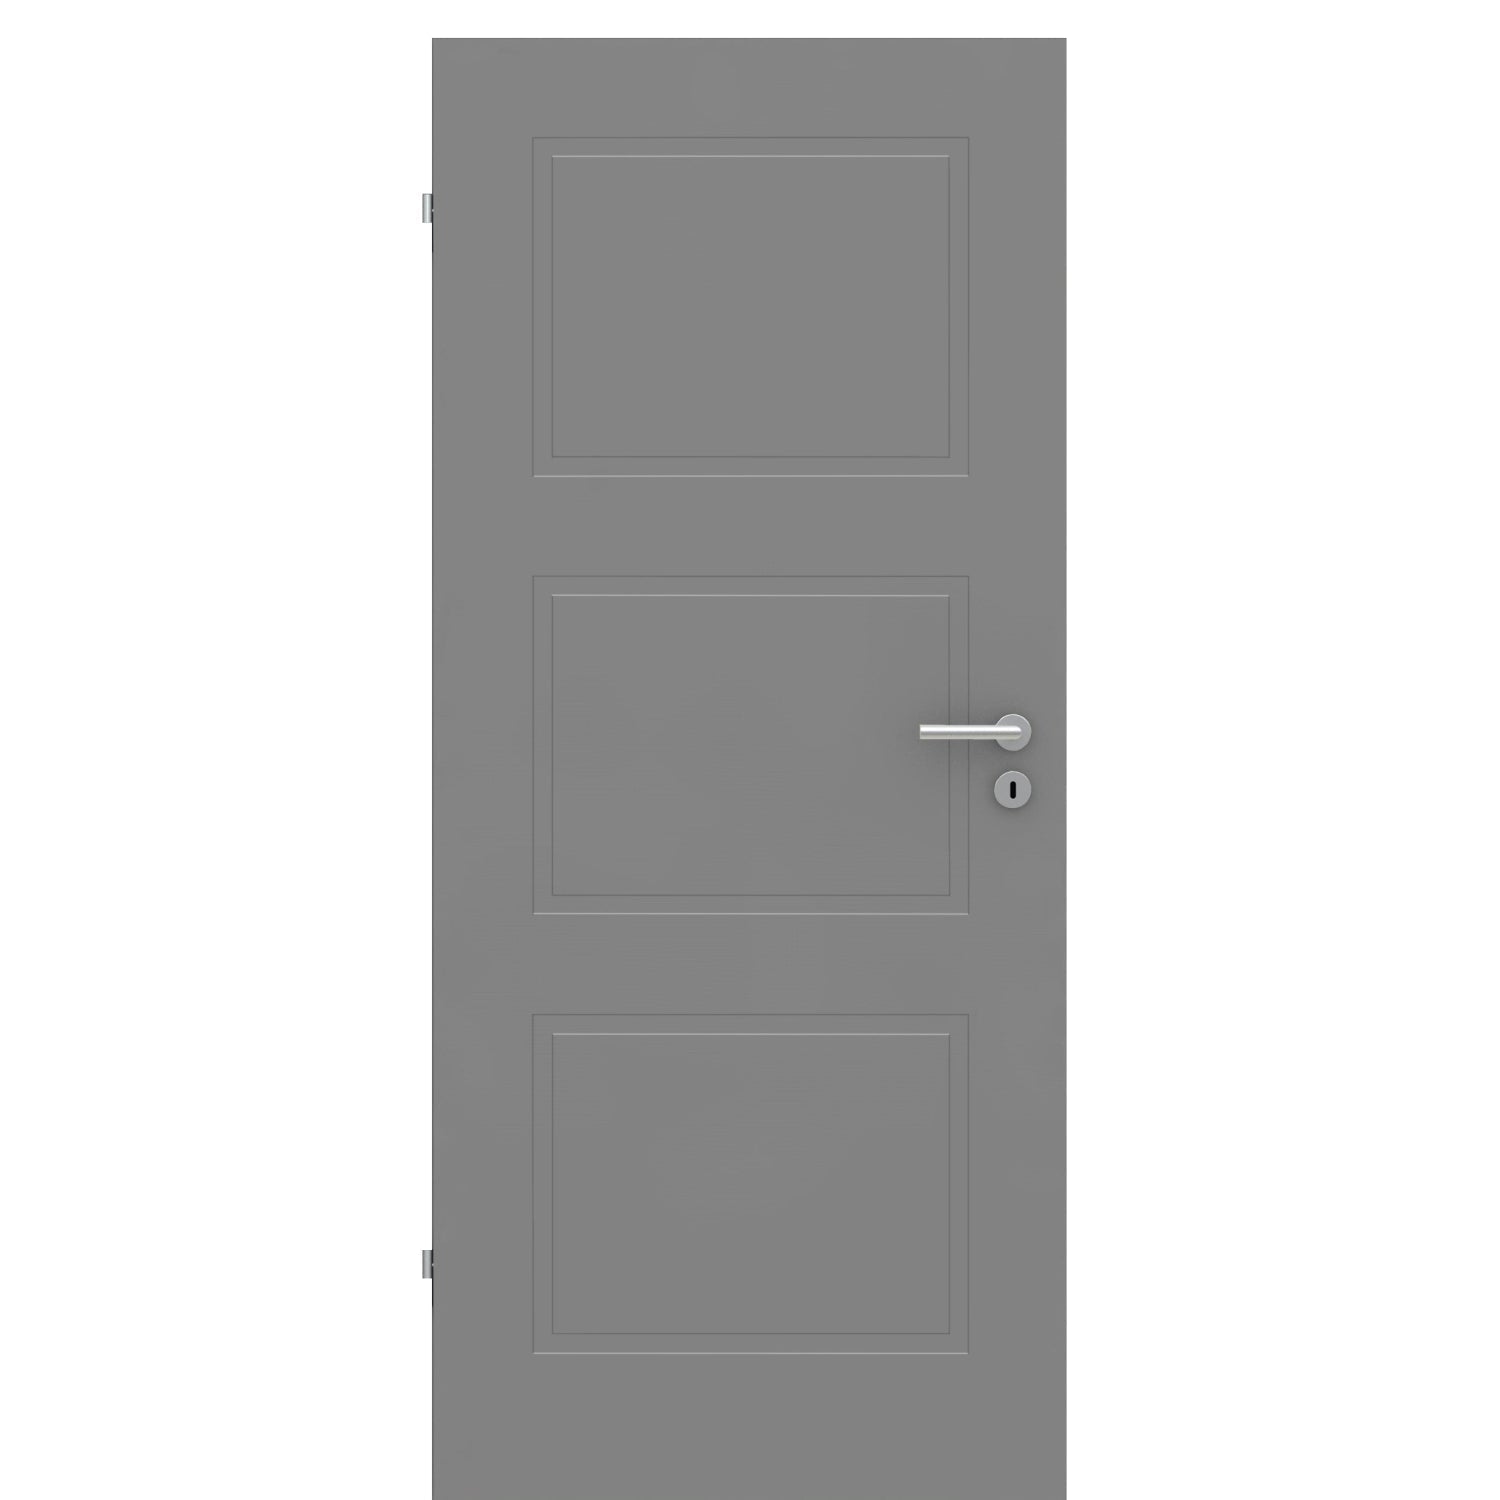 Zimmertür grau 3 Kassetten Designkante - Modell Stiltür M37